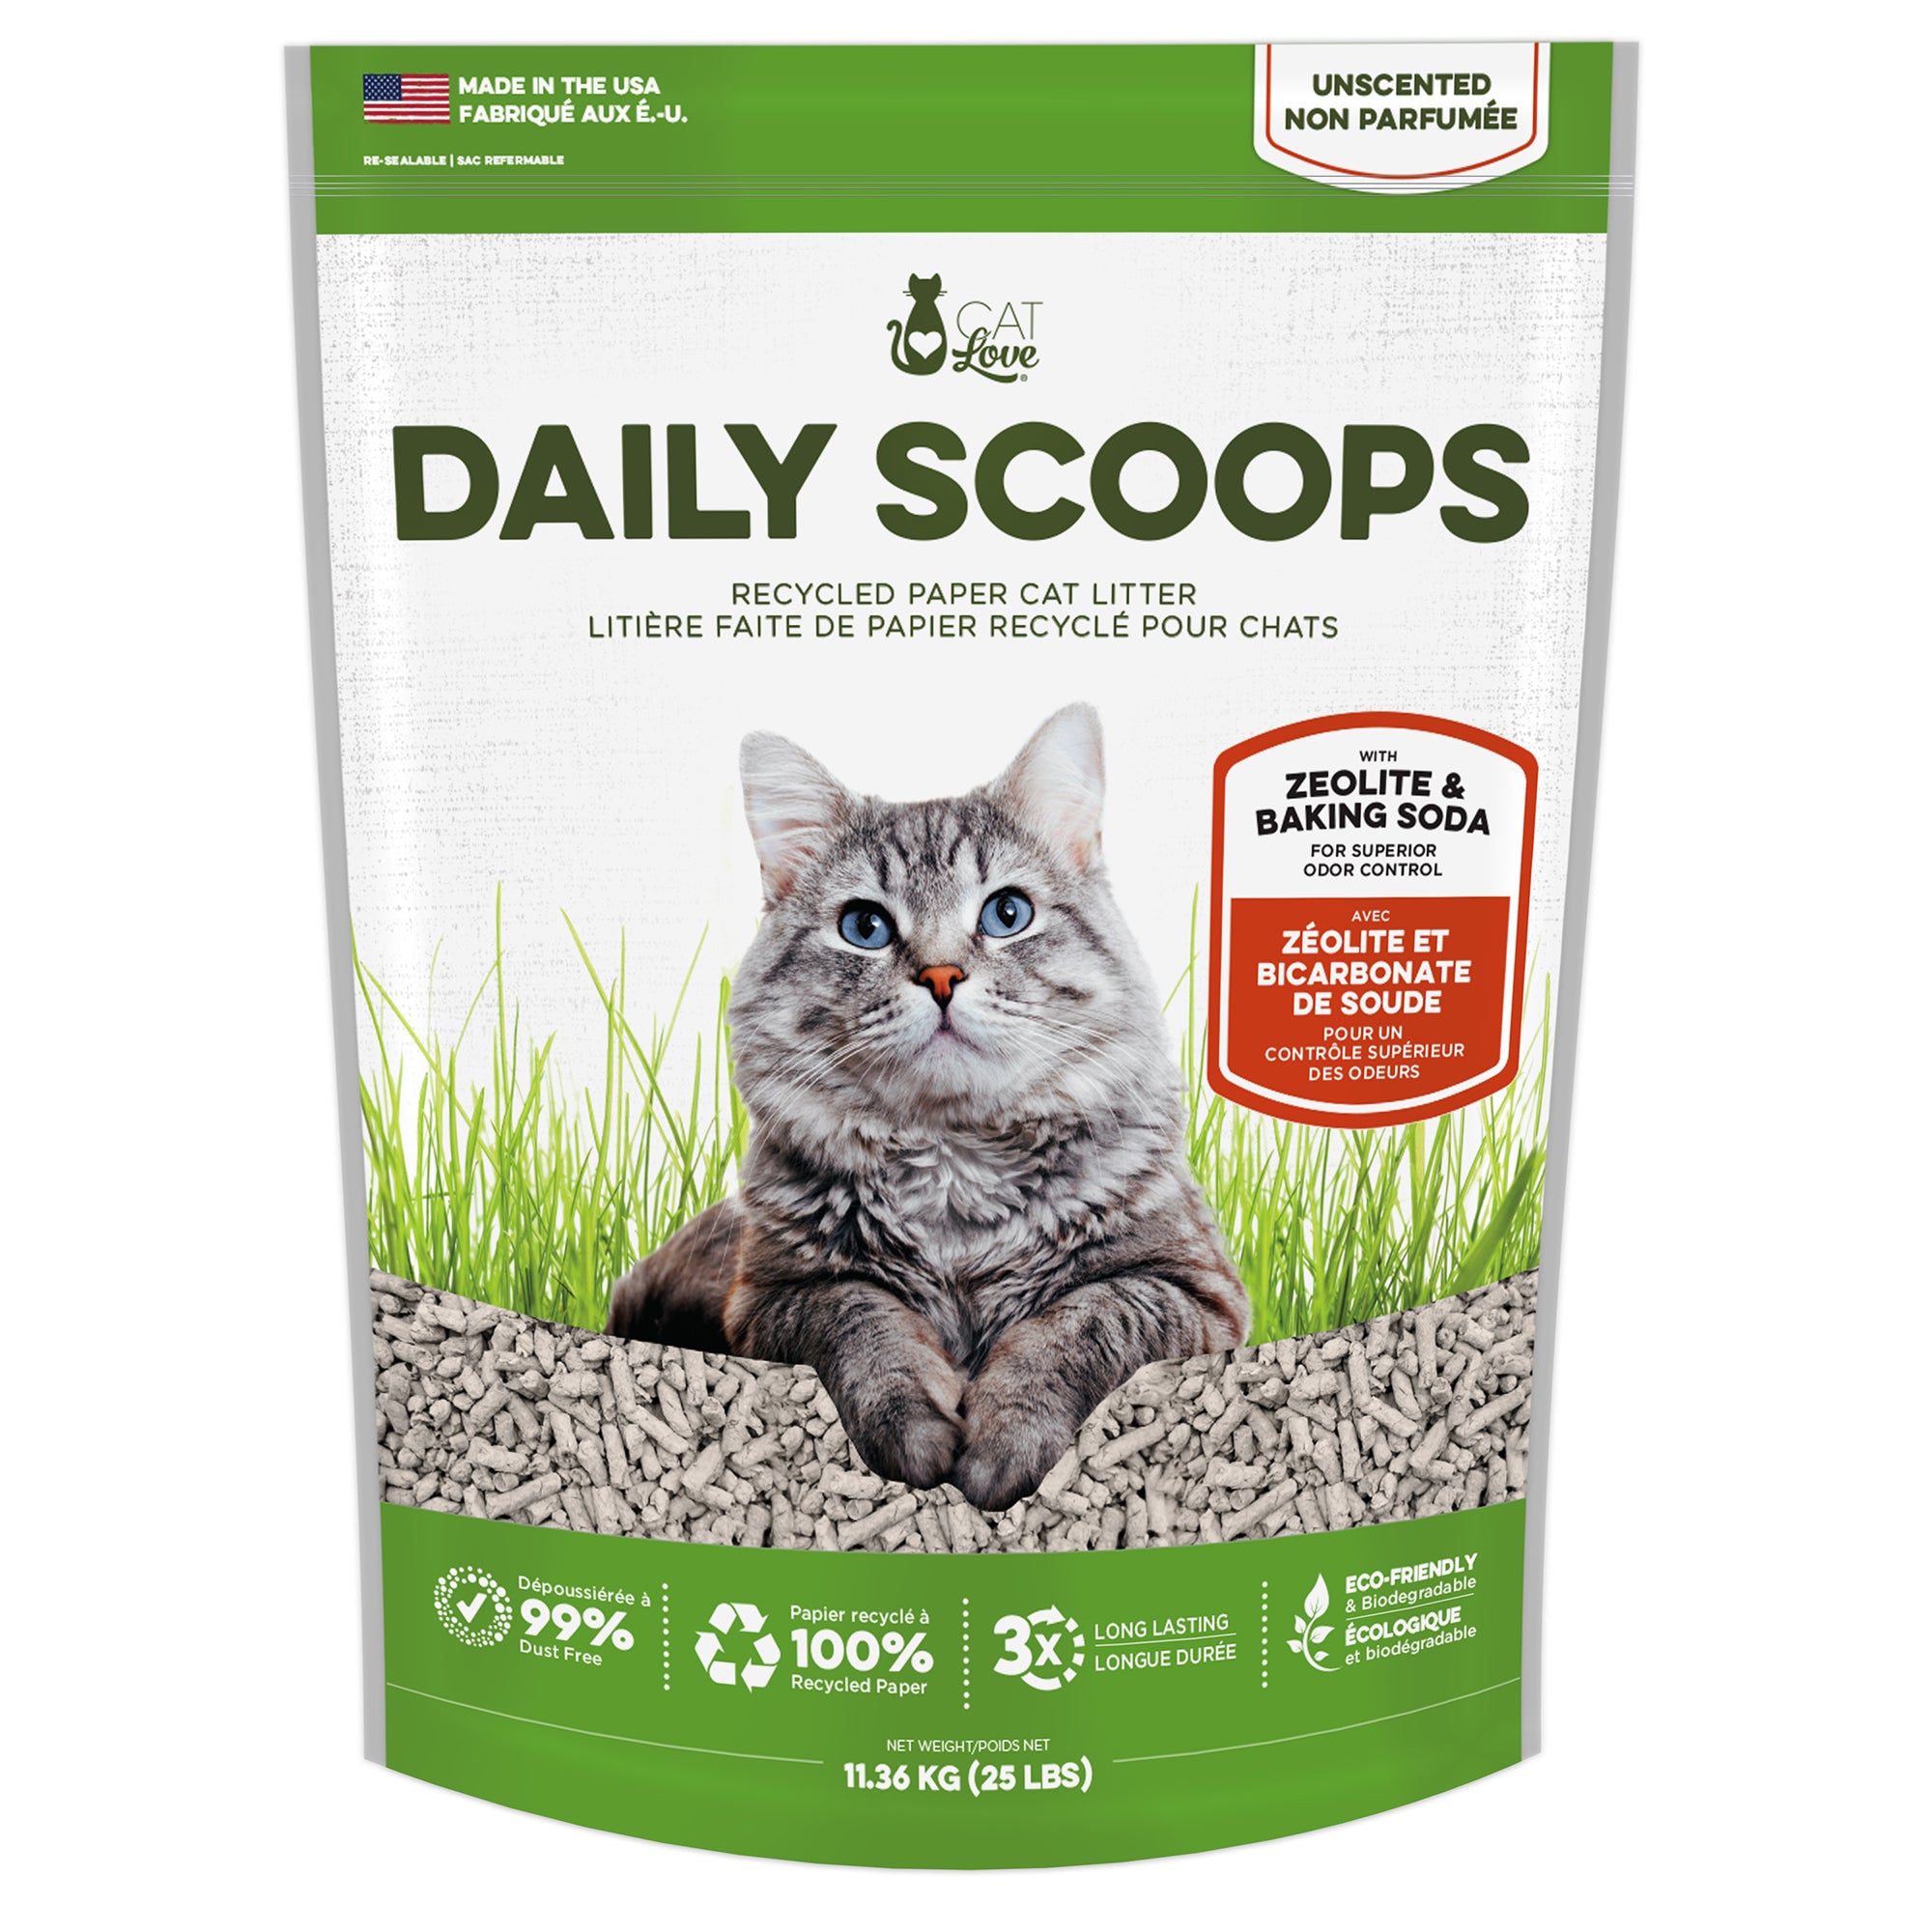 Litière pour chats Daily Scoops Cat Love faite de papier recyclé, sac de 11,36 kg (25 lb)